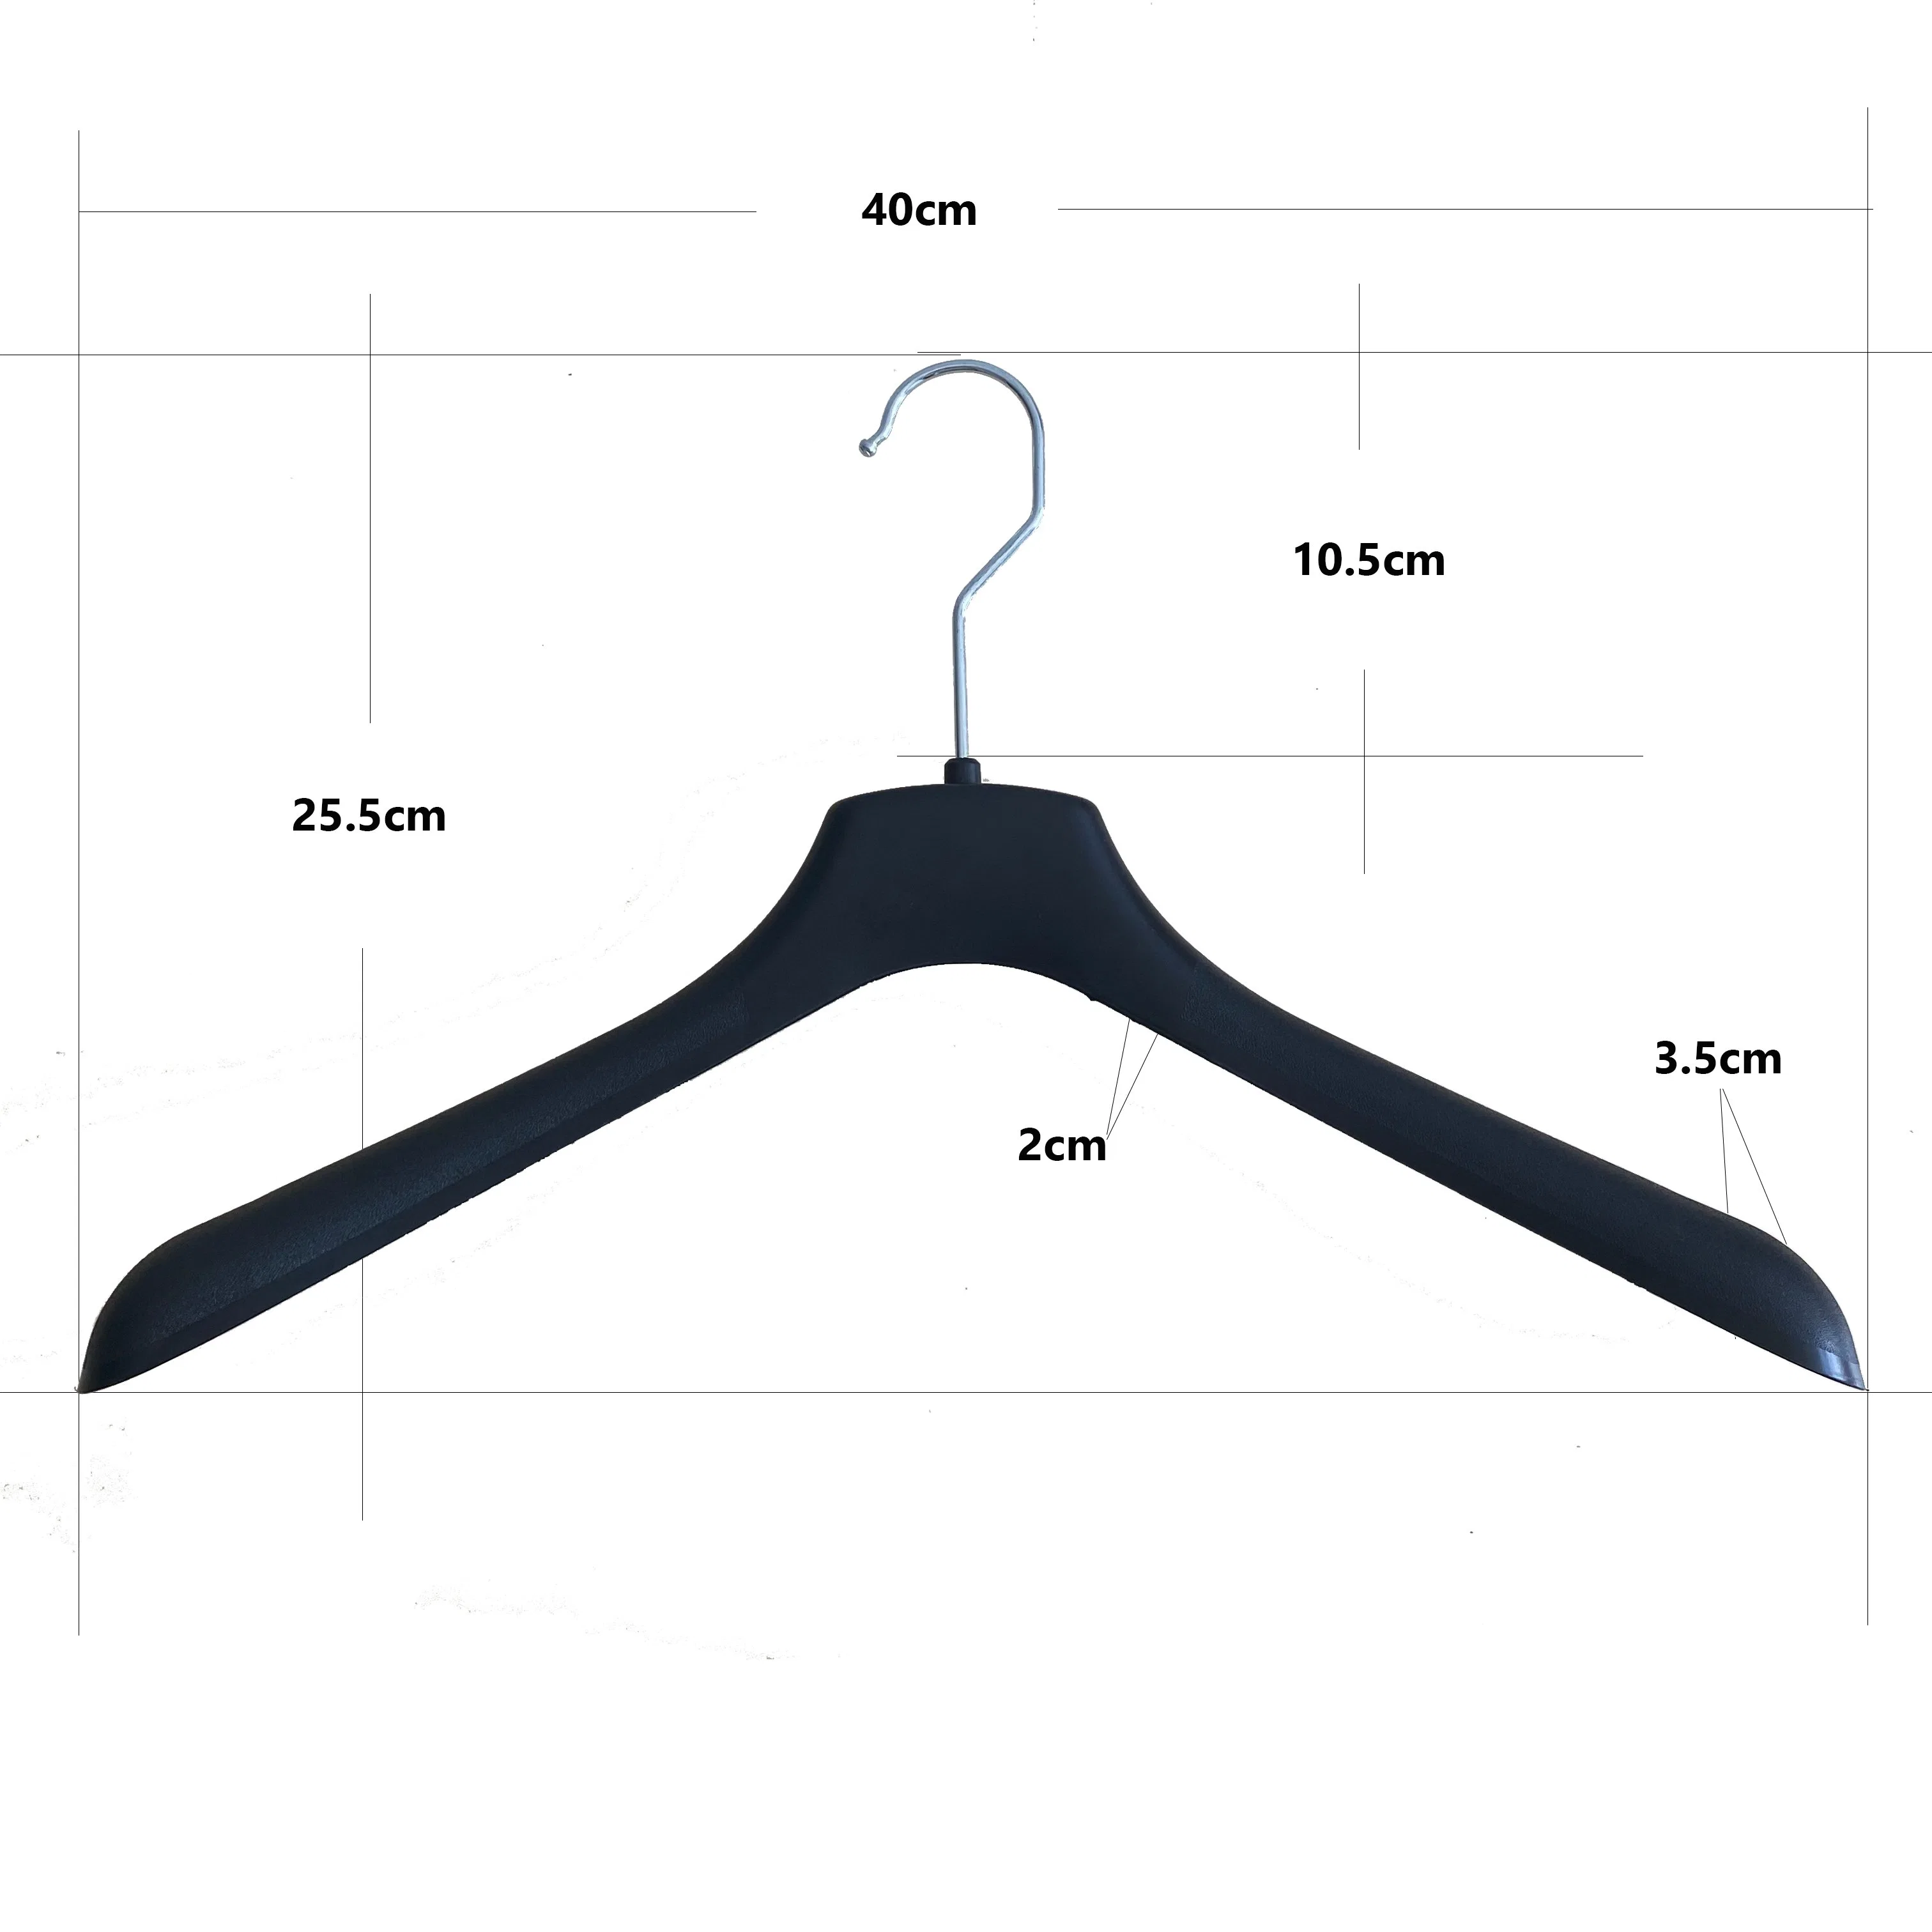 Fabrik-Hanger mit Metallhaken für Display Anzug Hanger Jacke Aufhänger (40cm)